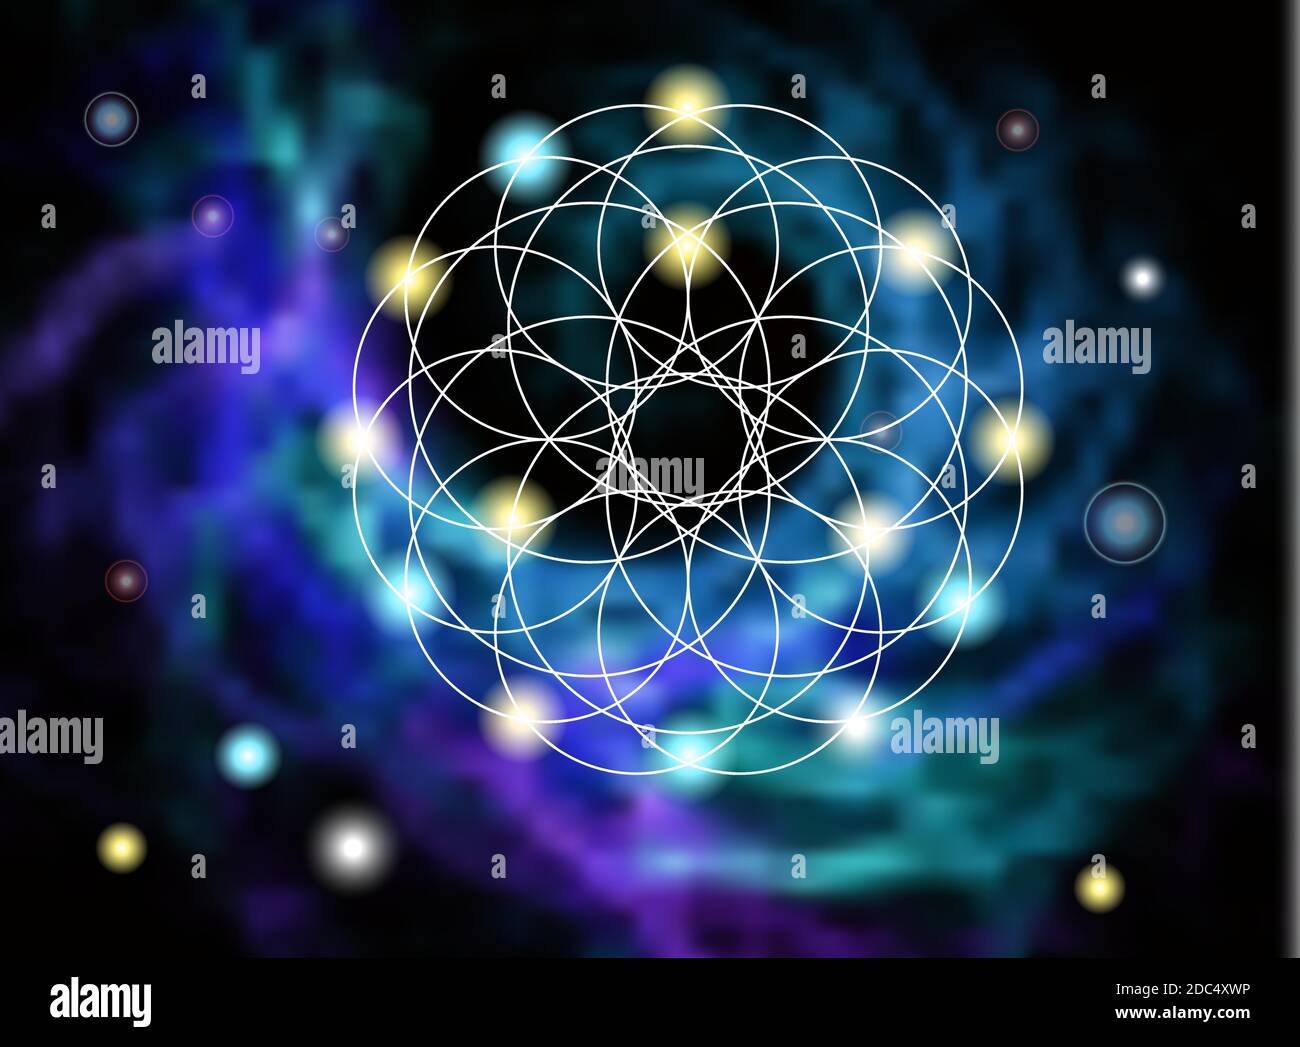 Simbolo geometrico astratto su sfondo a spirale sfocata. Geometria sacra, occulto, concetto di spiritualità. Illustrazione Vettoriale